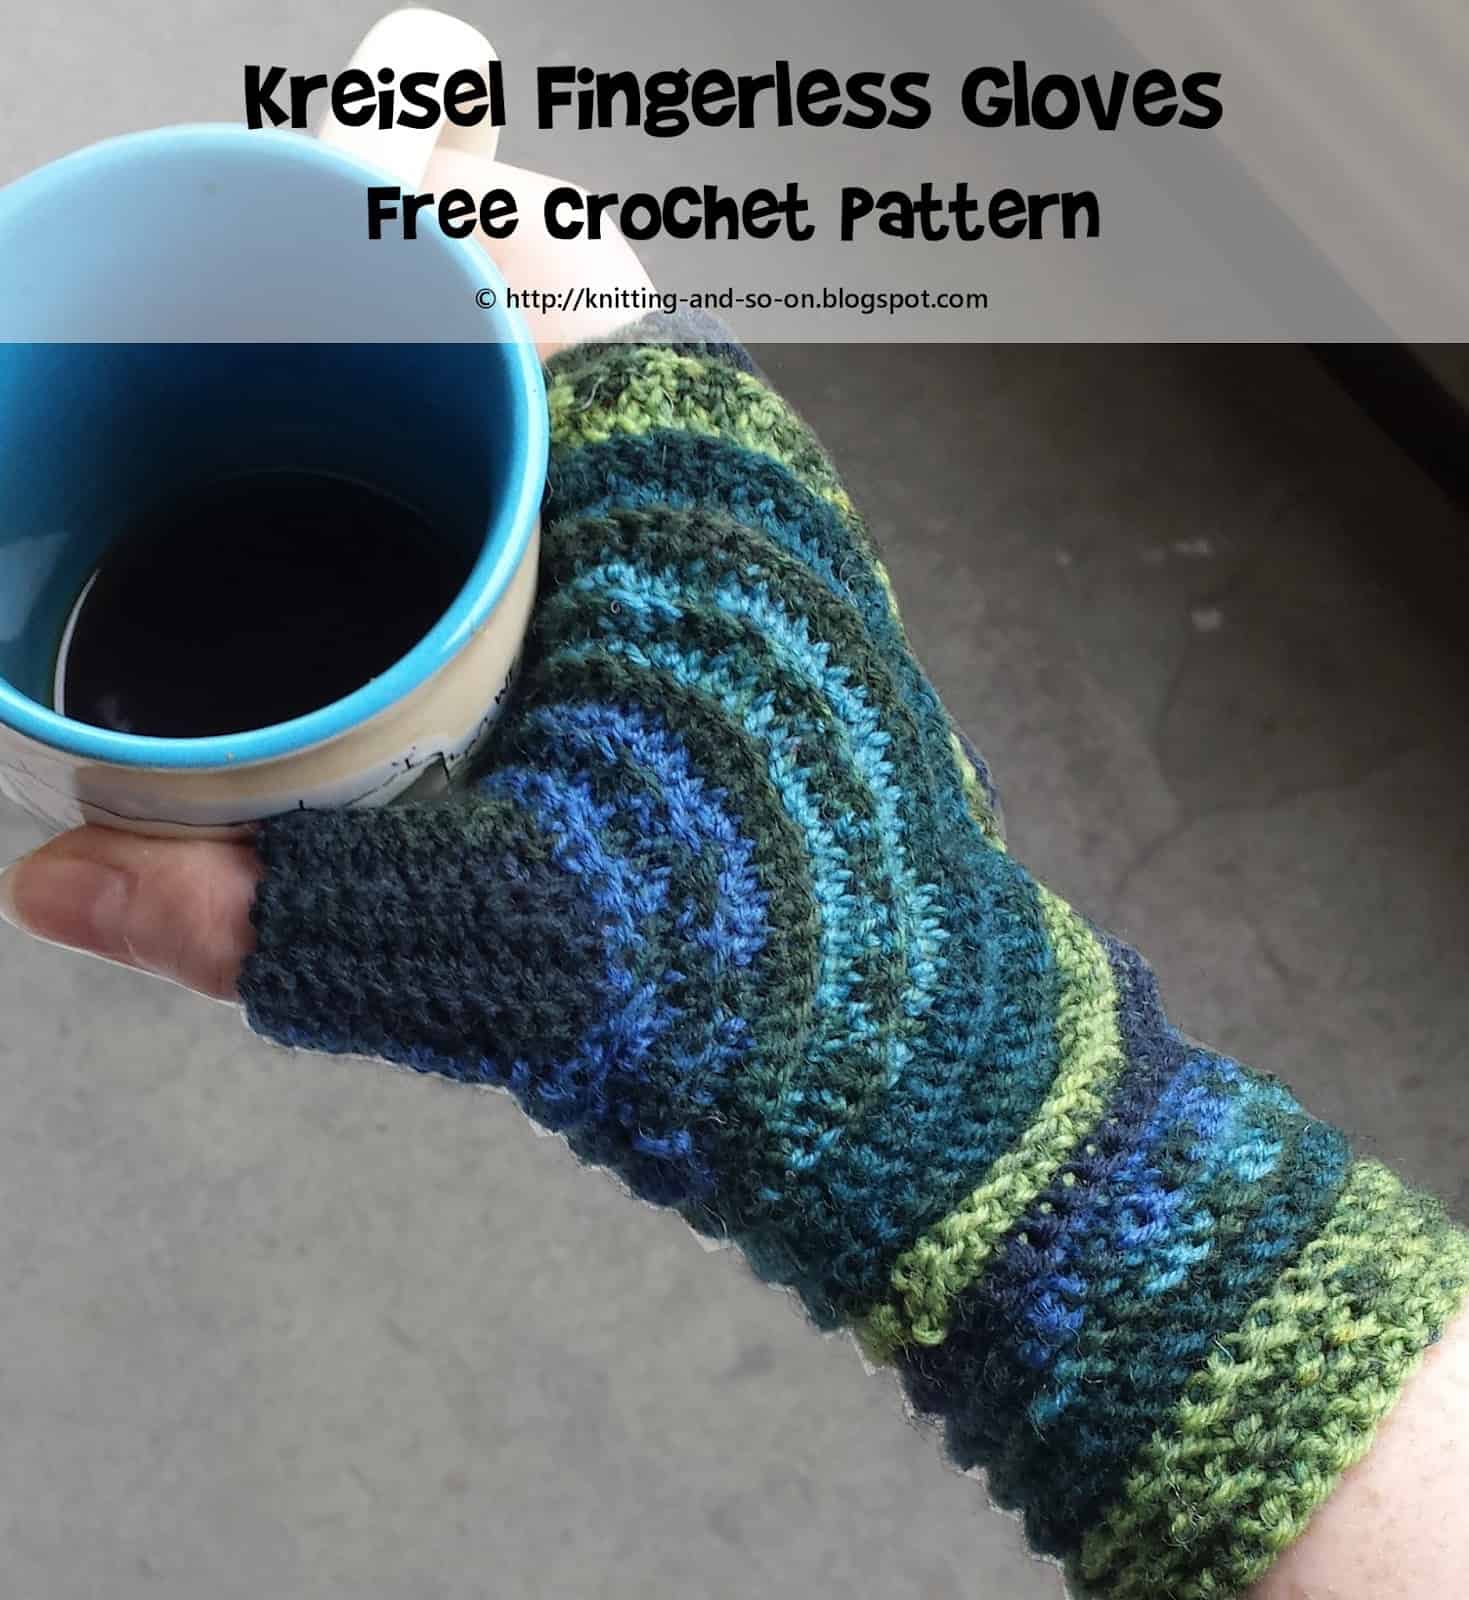 Kreisel fingerless gloves